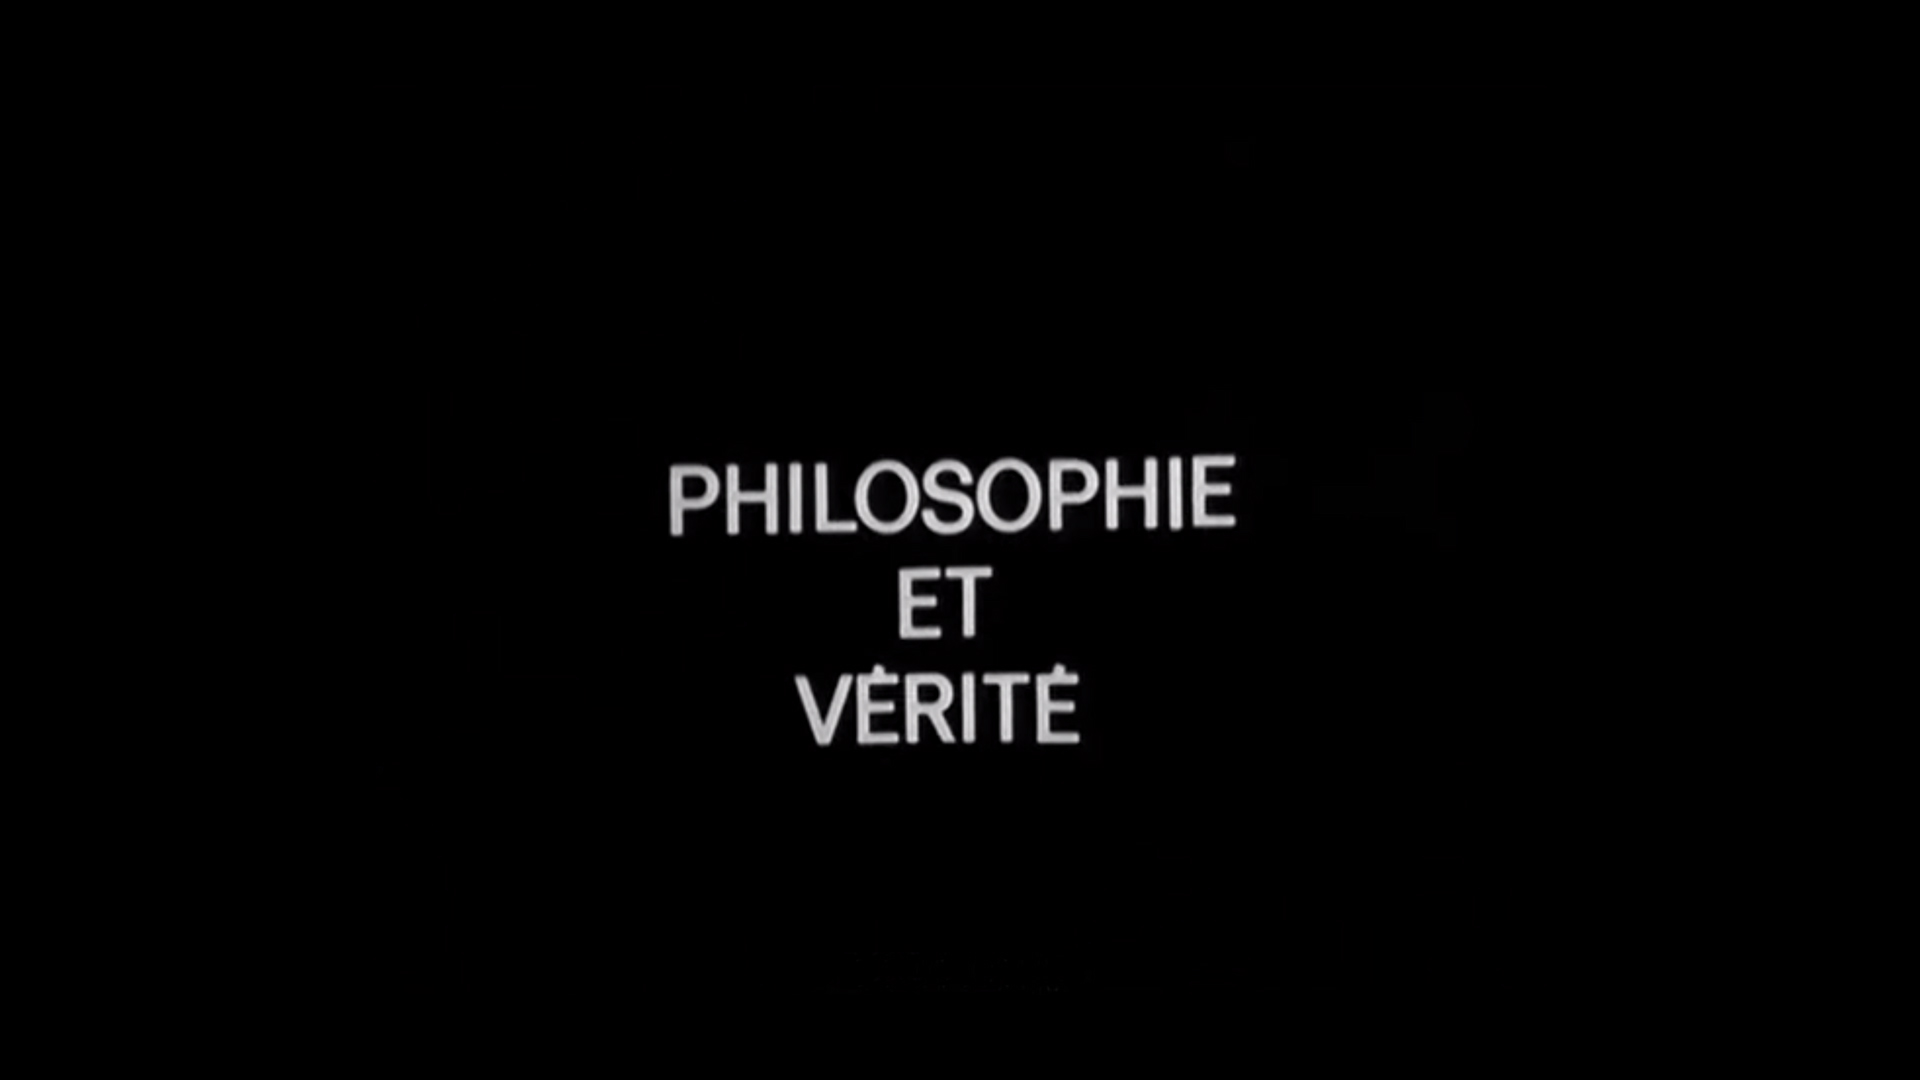 Philosophie-et-verite-theoryleaks.jpg